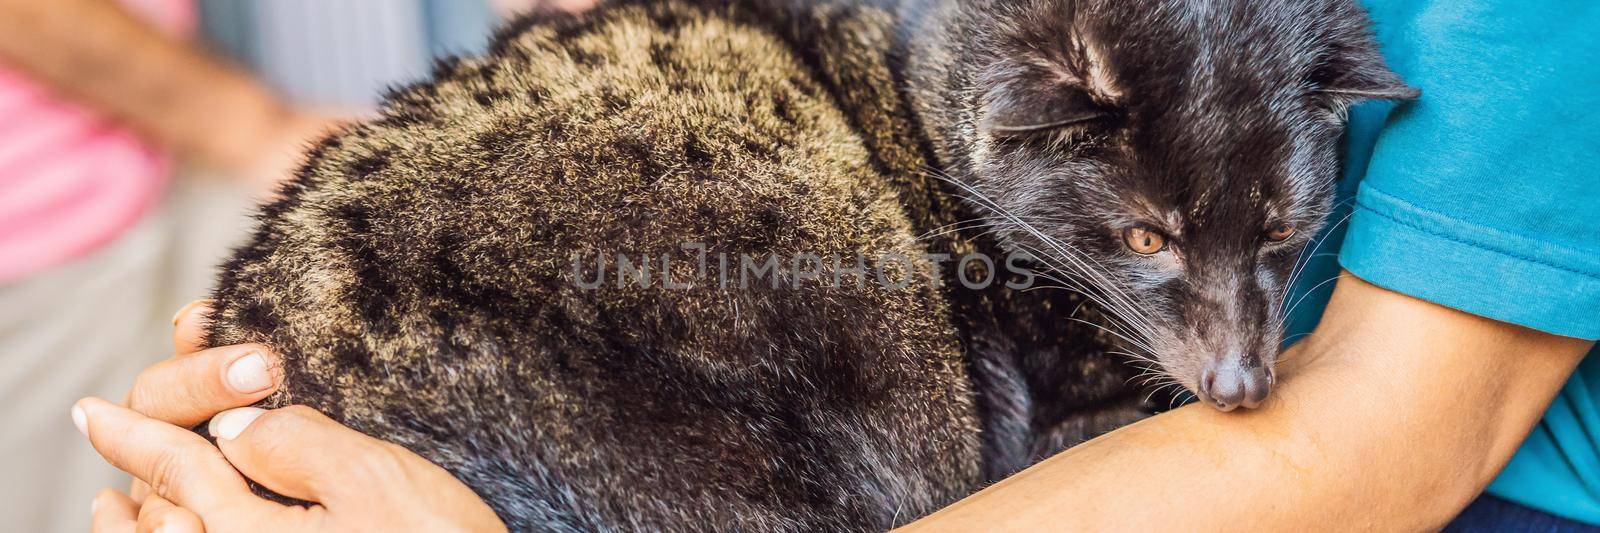 kopi luwak asian palm civet caffee, eyes closeup, most expensive coffee animal BANNER, LONG FORMAT by galitskaya